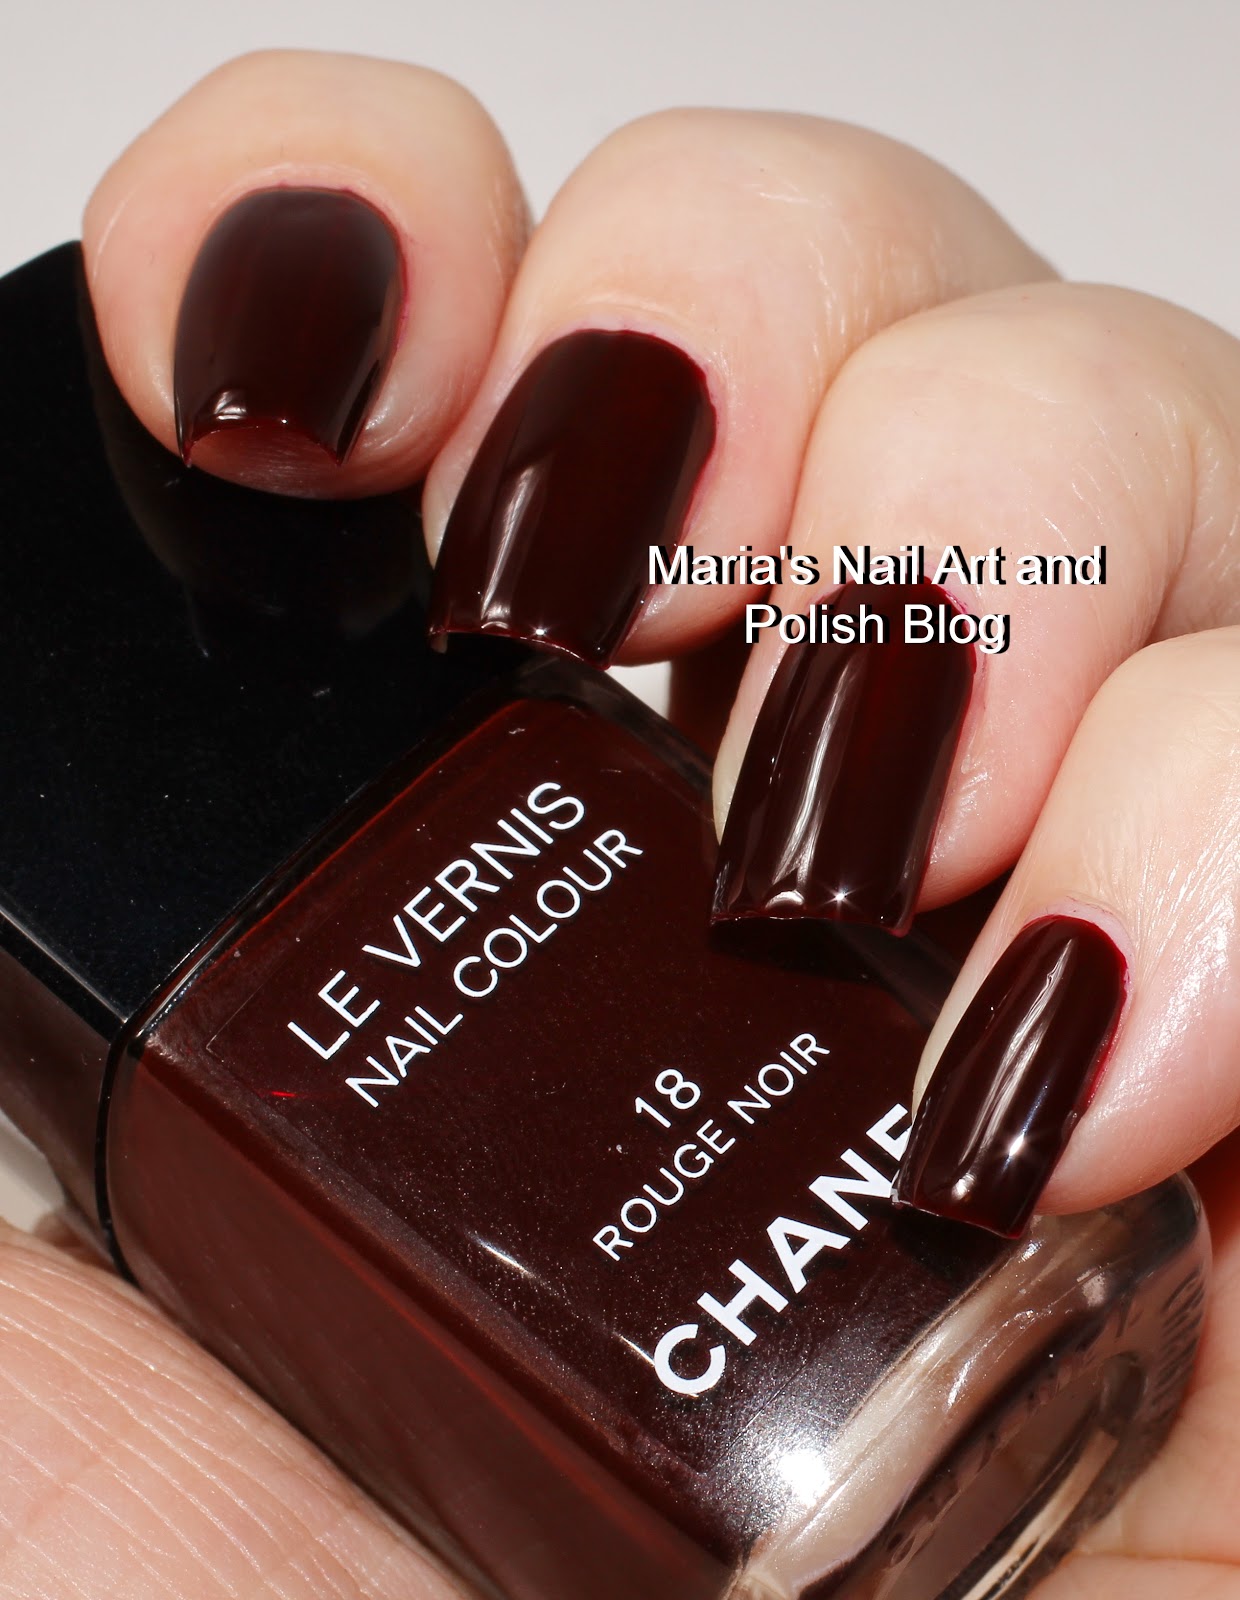 Chanel in #18 Rouge Noir, #18 Vamp, #757 Rose Fusion, and Le Top Coat Lamé  Rouge Noir Swatches + Comparisons